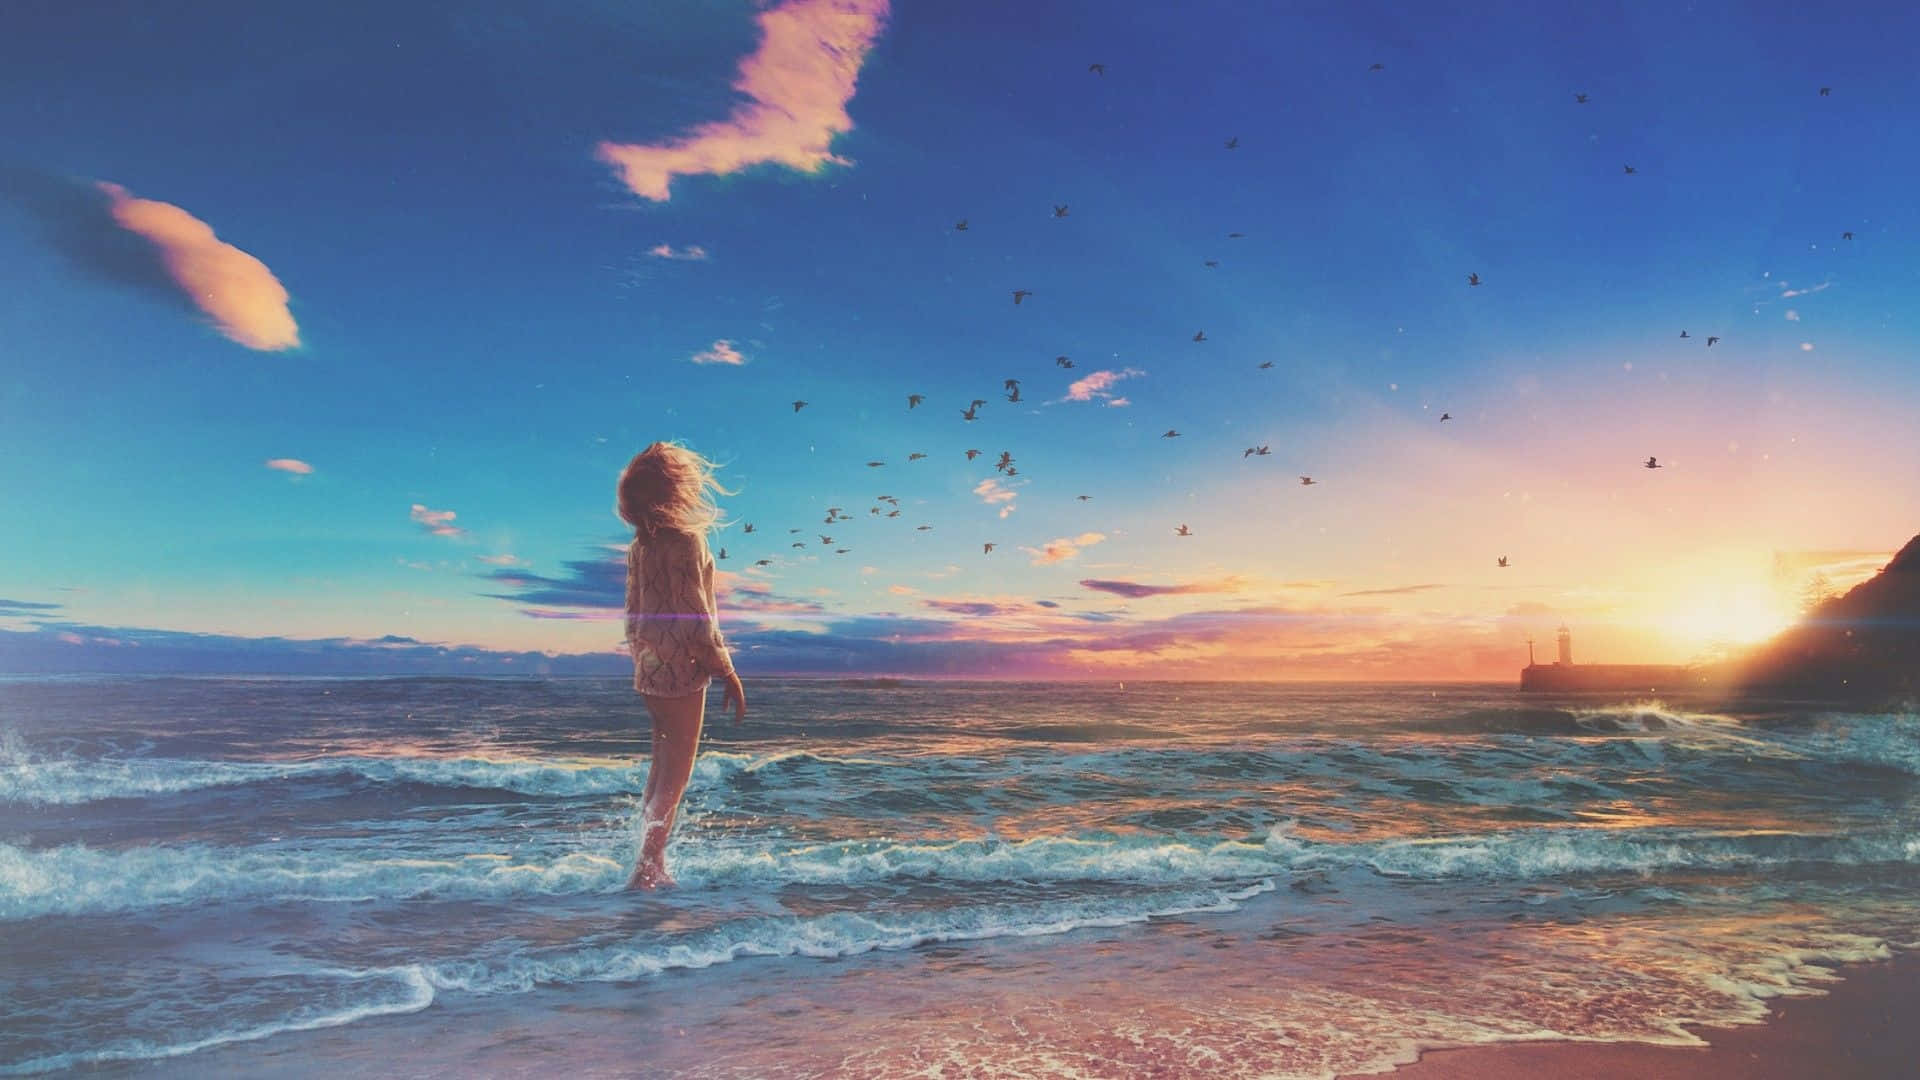 Anime Sunset Background Images